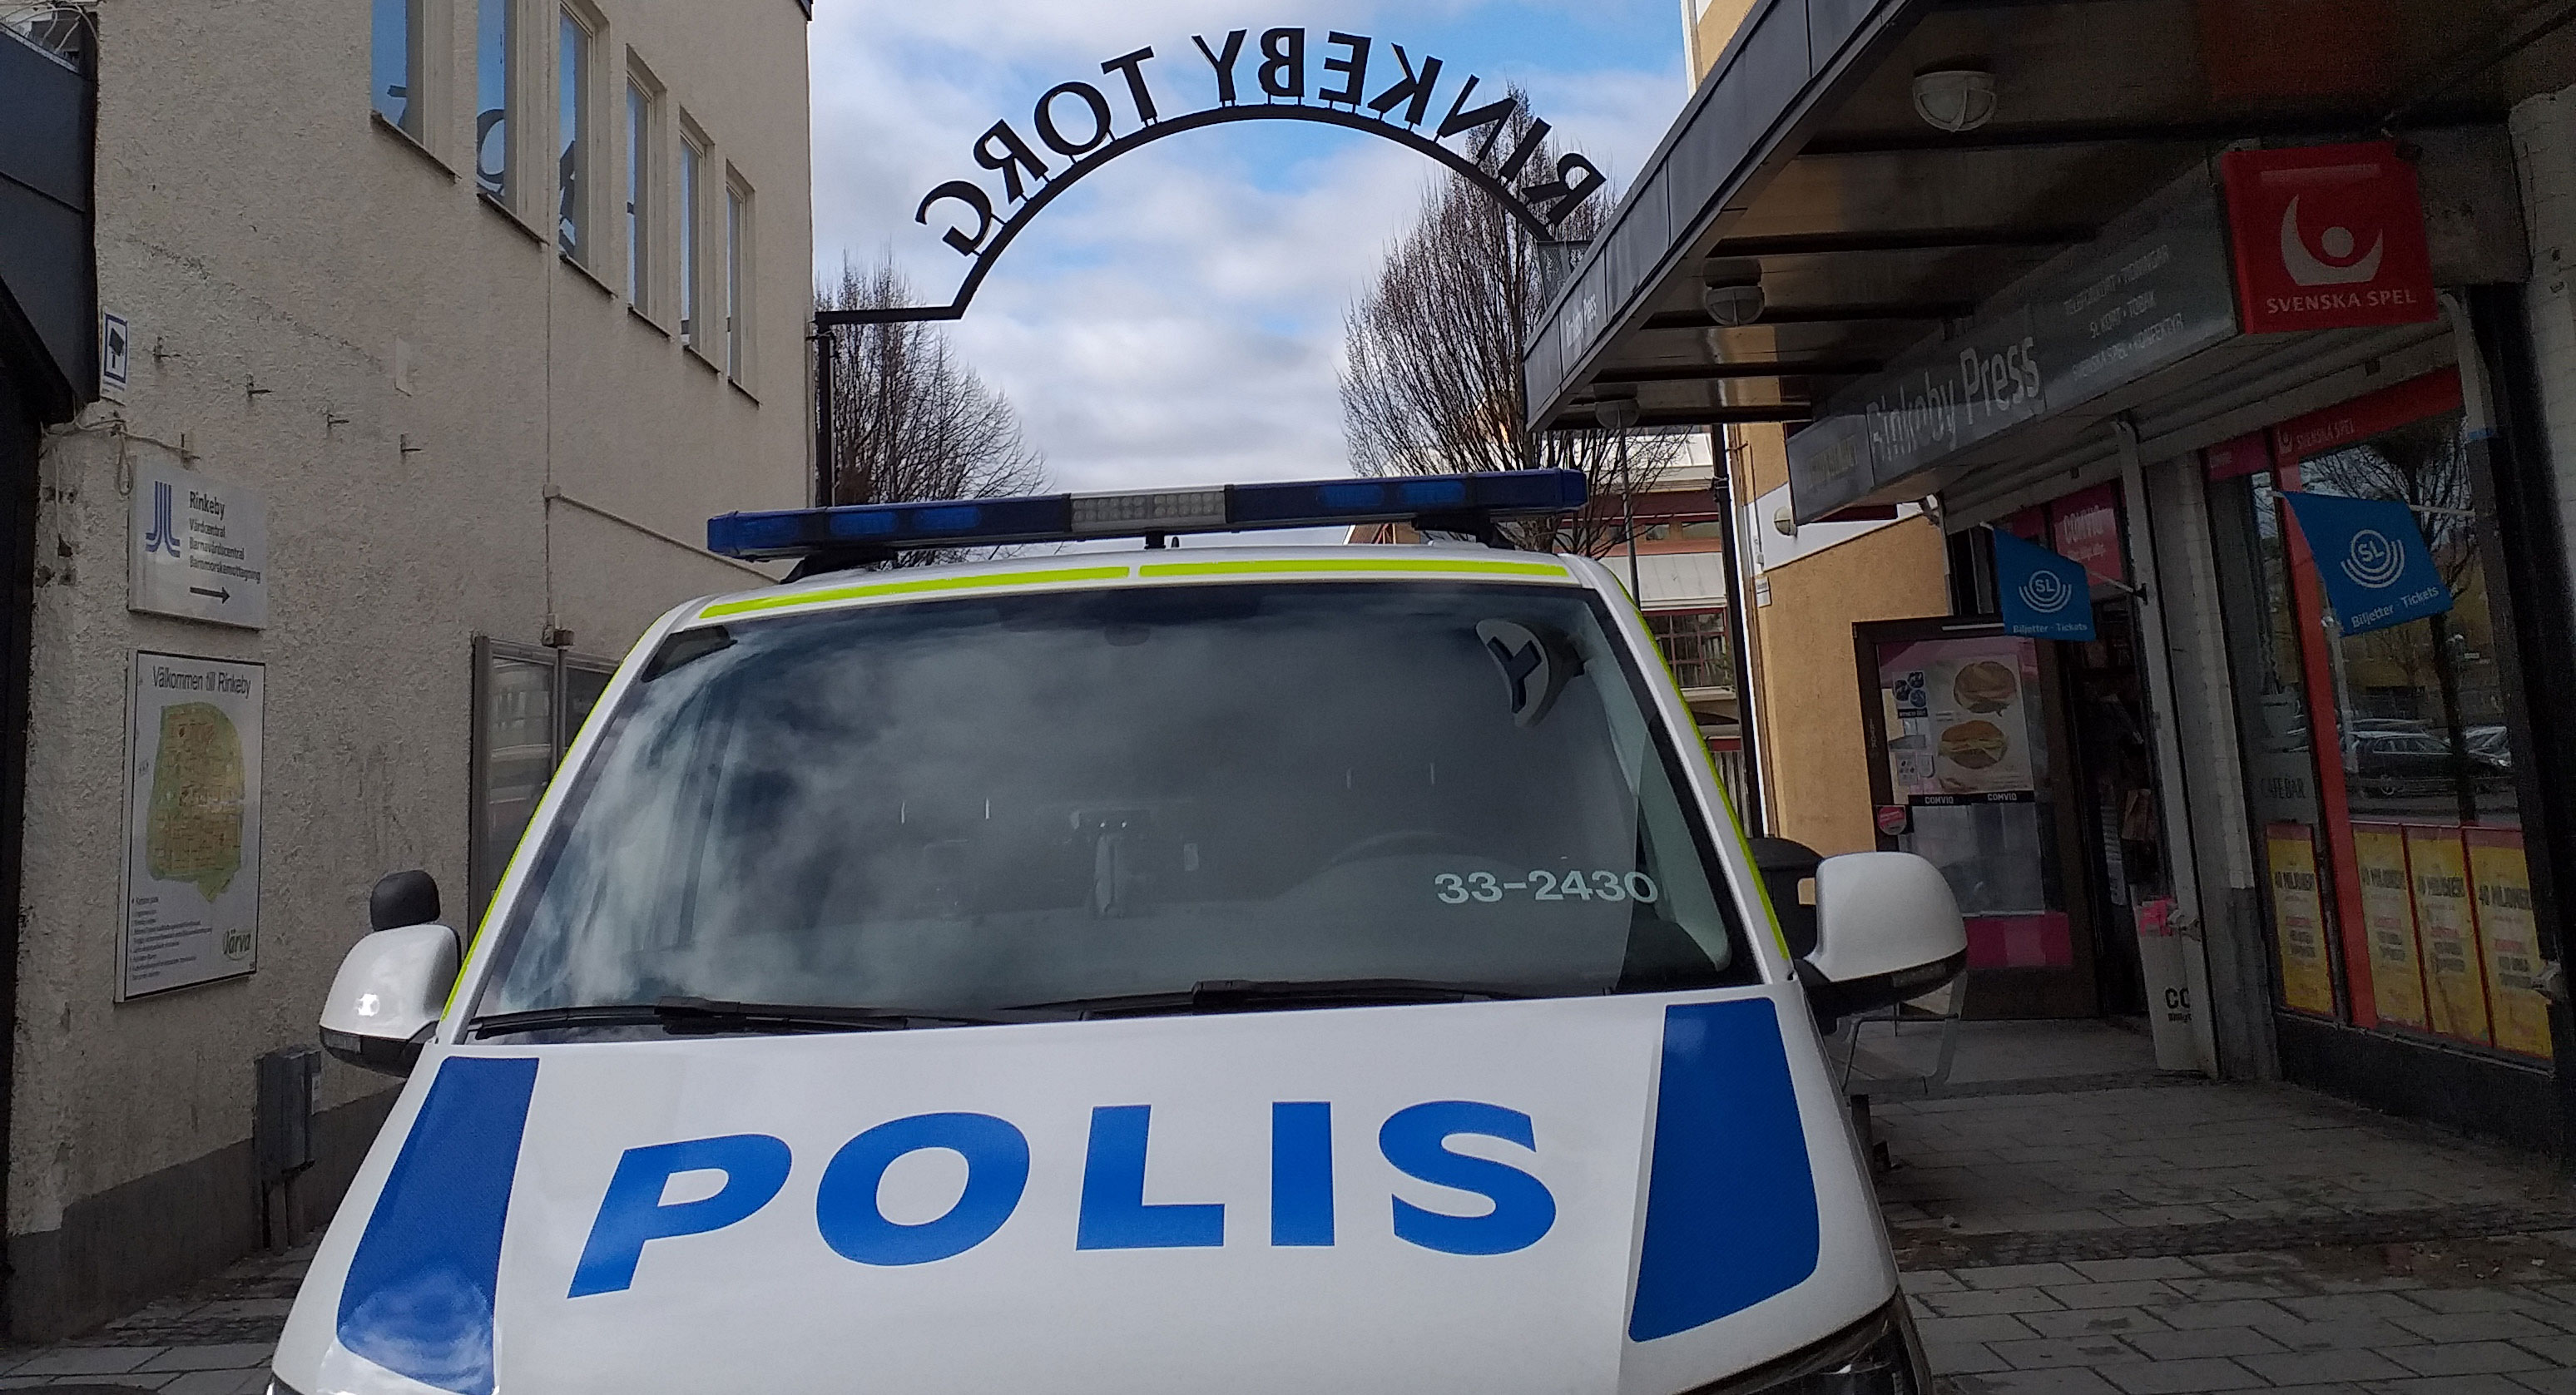 Den nya polisstationen i Rinkeby öppnar i september. Då området ses som särskilt brottsutsatt har skyddsorganisationen inom Polisen påtalat att säkerheten för personalen behöver ses över.